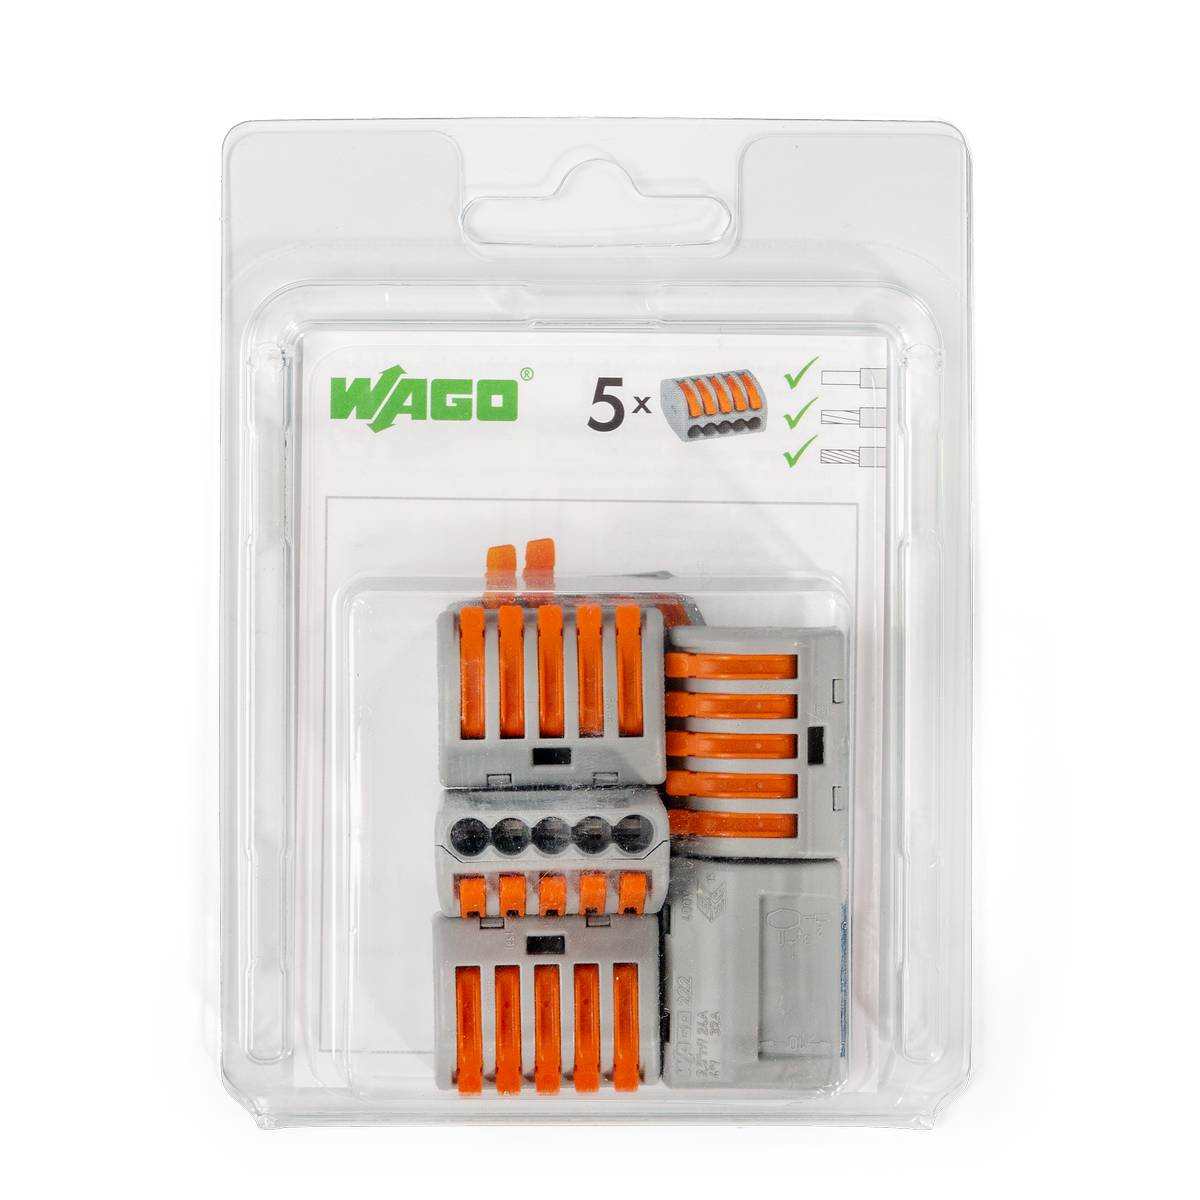 222–415/996-005 Мини-упаковка рычажковых универсальных клемм «Wago» в блистерах (без контактной паст